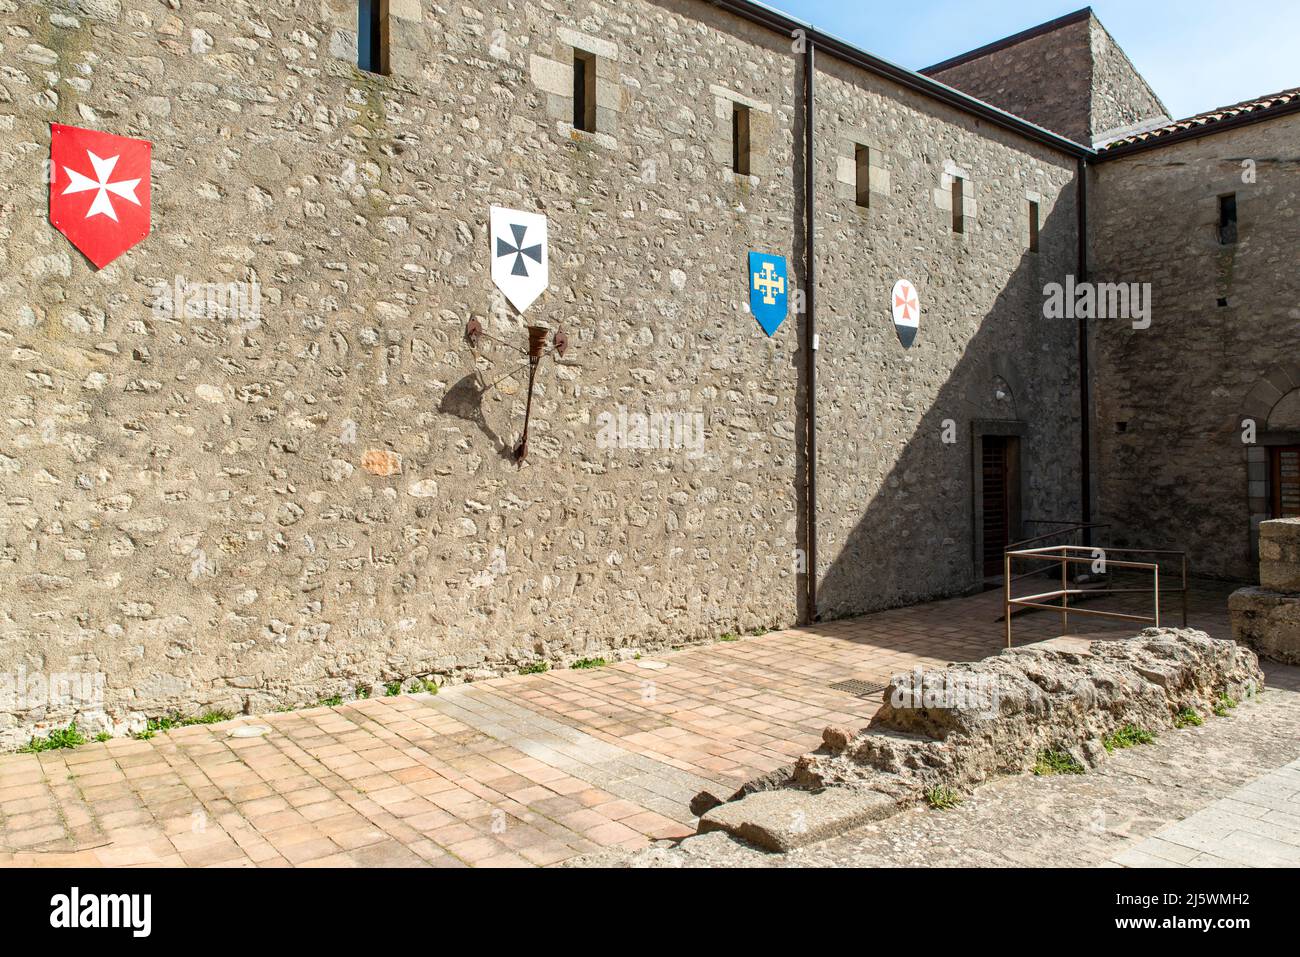 castello medievale - Paese di Montalbano Elicona, Provincia di Messina, borgo dei borghi 2015, splendido borgo medievale molto caratteristico Stockfoto